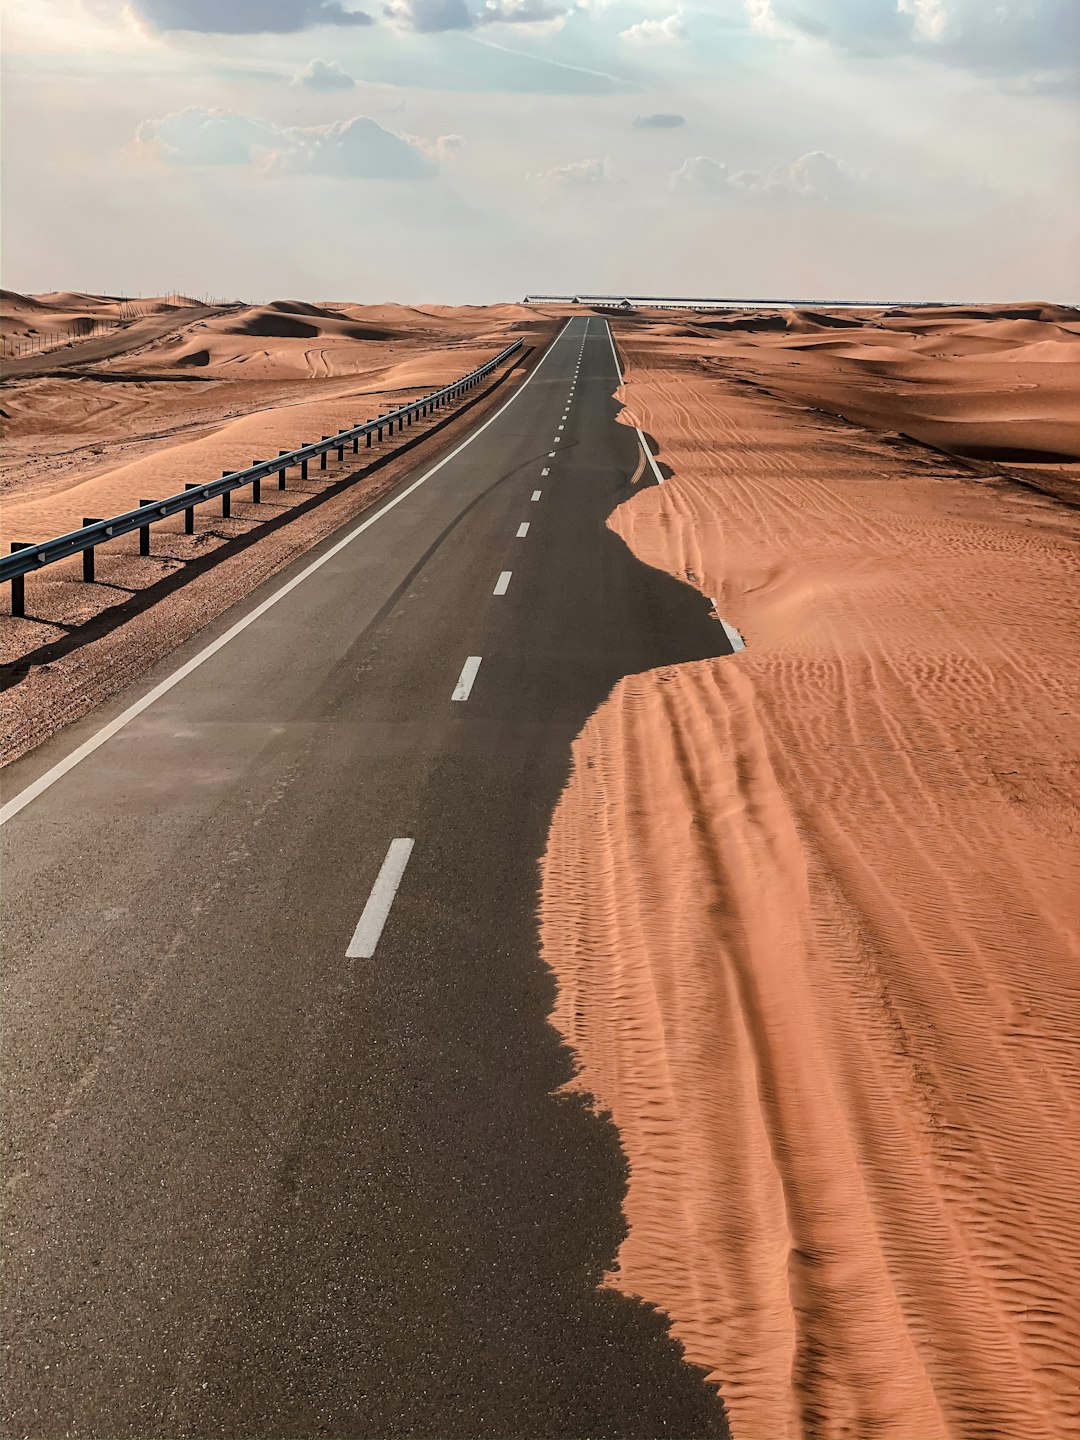 Desert photo spot Al Ain Hatta